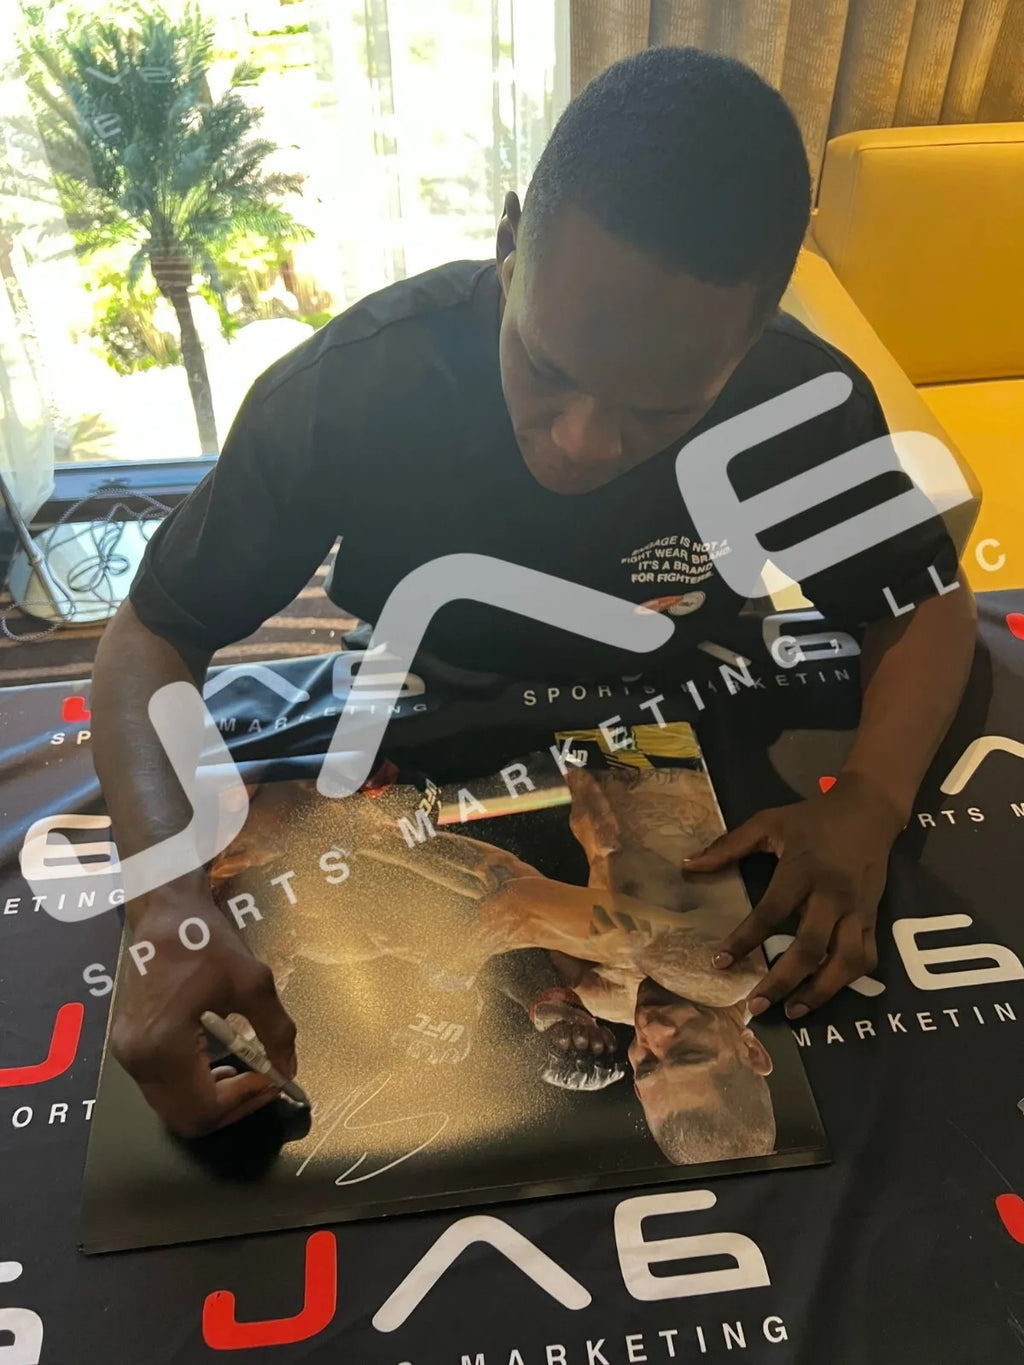 Israel Adesanya autographed framed 16x20 photo UFC JSA Style Bender Suede Matte